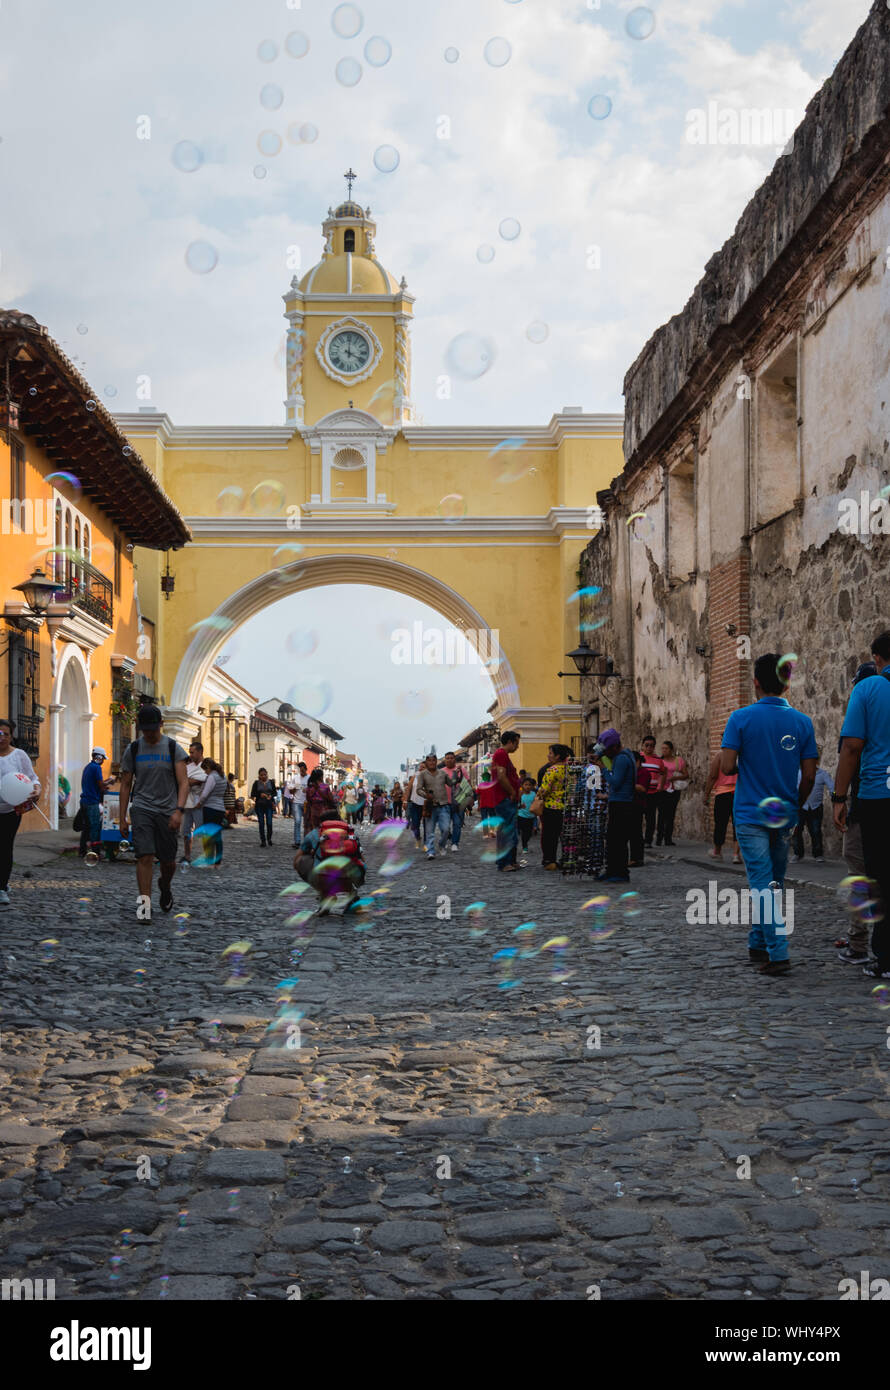 Arco de Santa Catalina con bolle di sapone, Antigua, Guatemala. Foto Stock